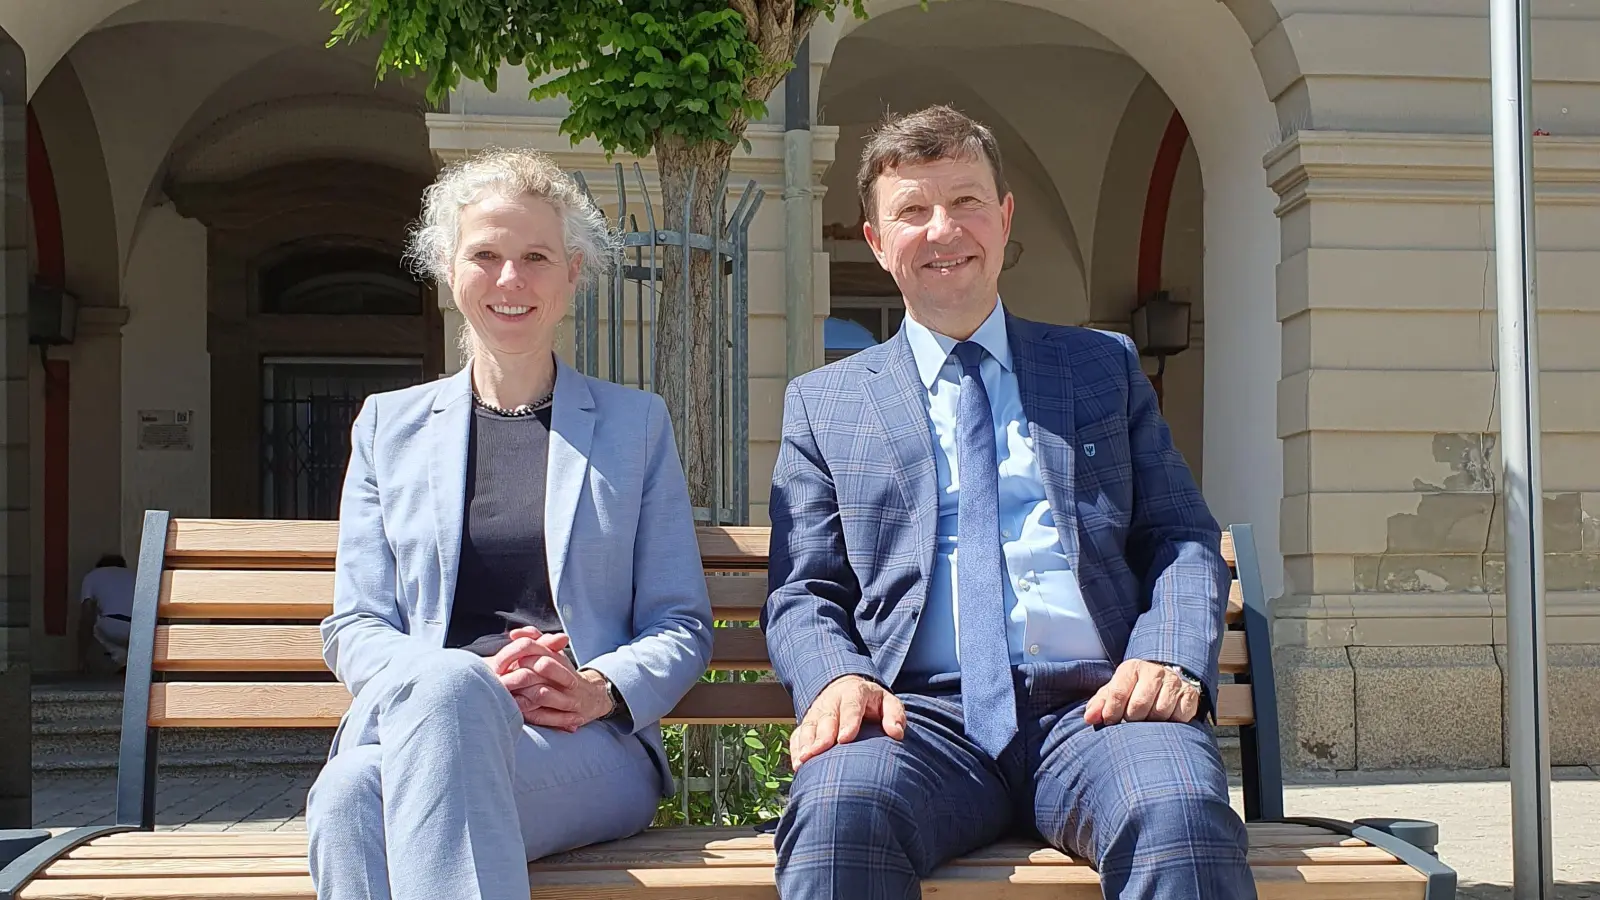 Freuen sich auf die Zusammenarbeit: die künftige KKT-Geschäftsführerin Birgit Grübler und Bürgermeister Jürgen Heckel. (Foto: Anna Franck)